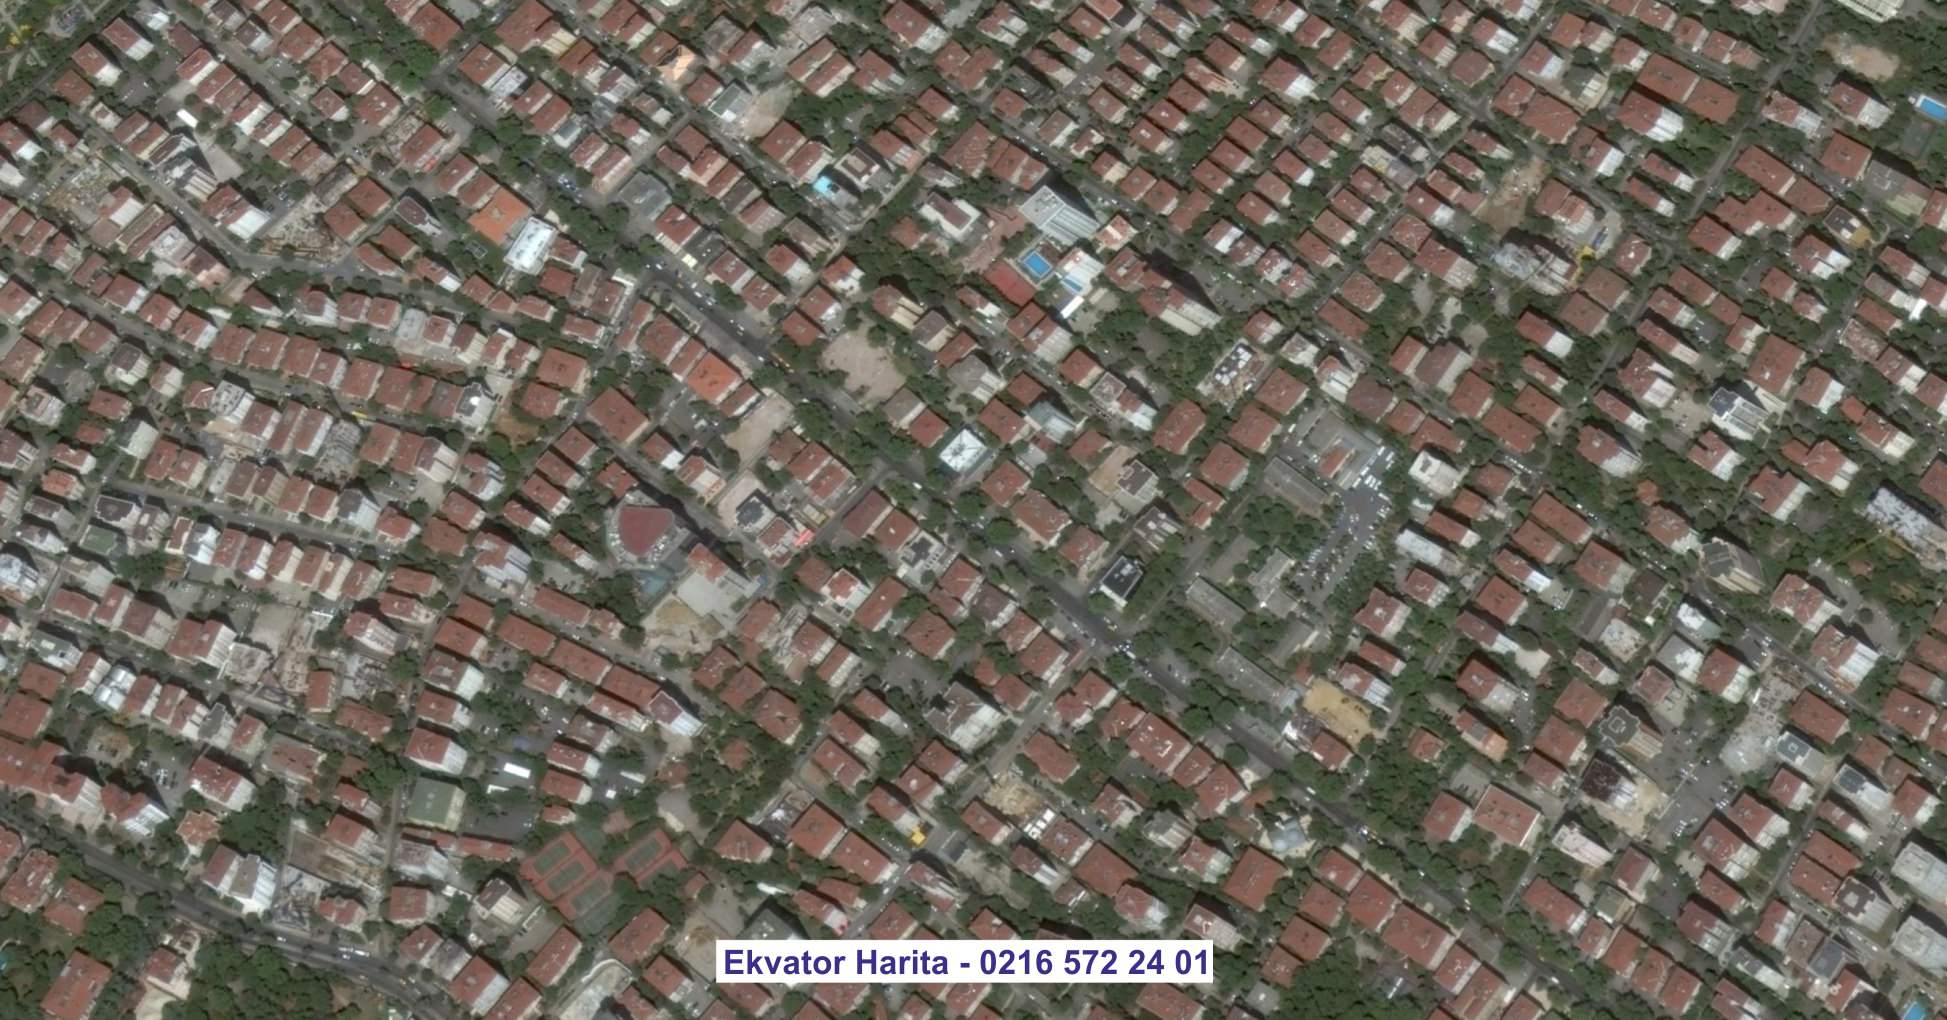 Kuşadası Uydu Görüntüsü Örnek Fotoğrafı